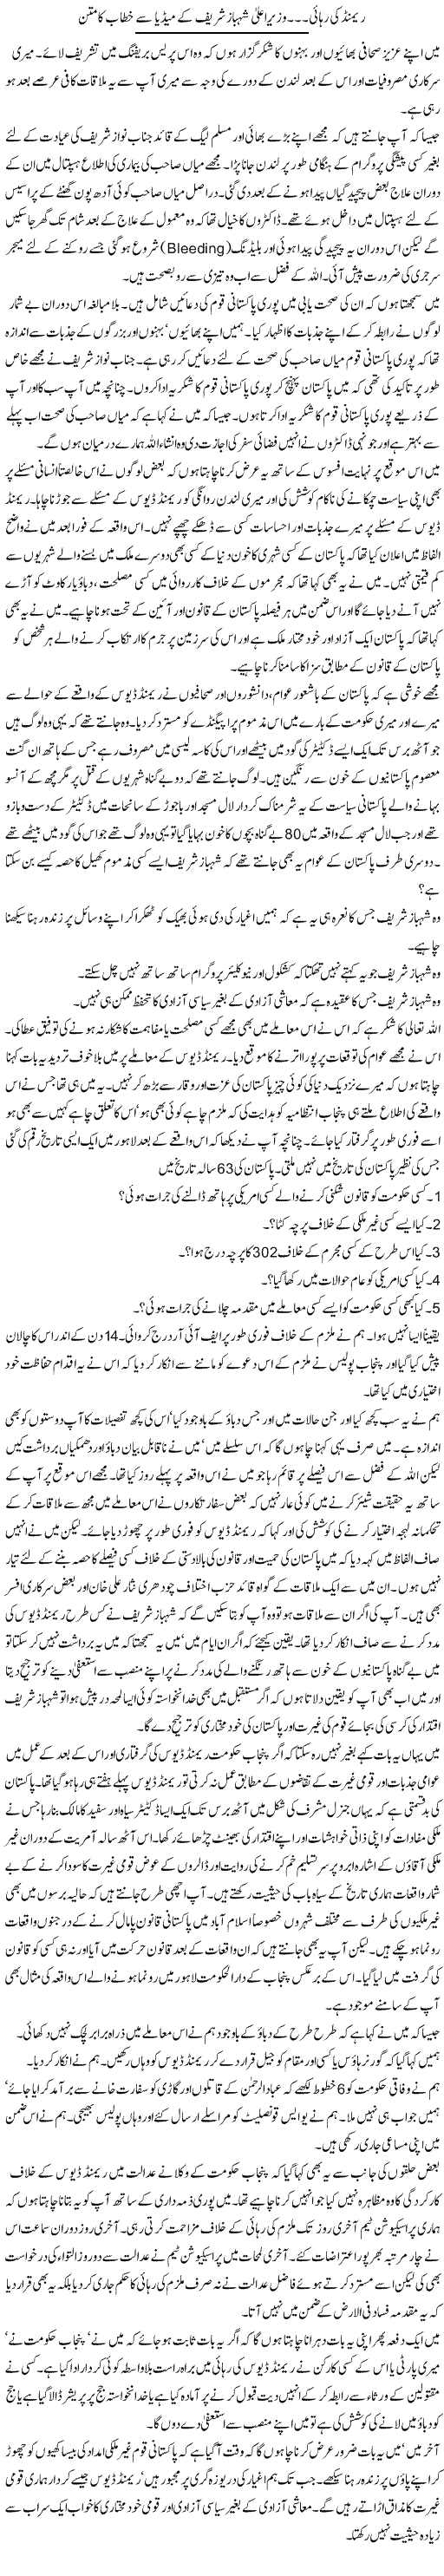 Raymond Release Express Column Shahbaz Sharif 31 March 2011